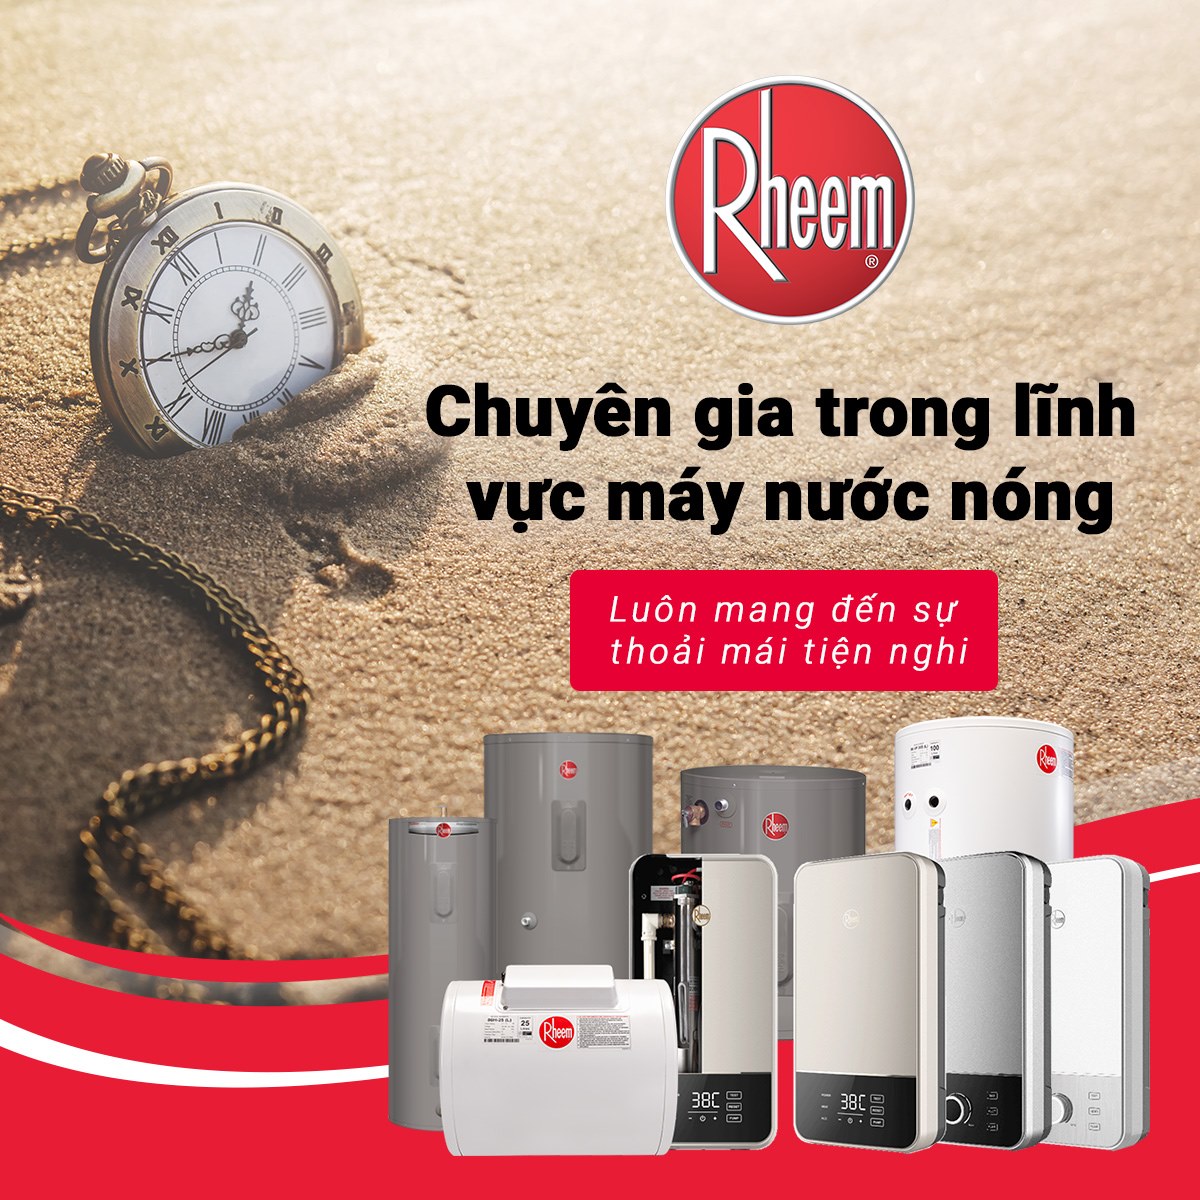 Rheem Vietnam - Những công nghệ đột phá của máy nước nóng RHEEM